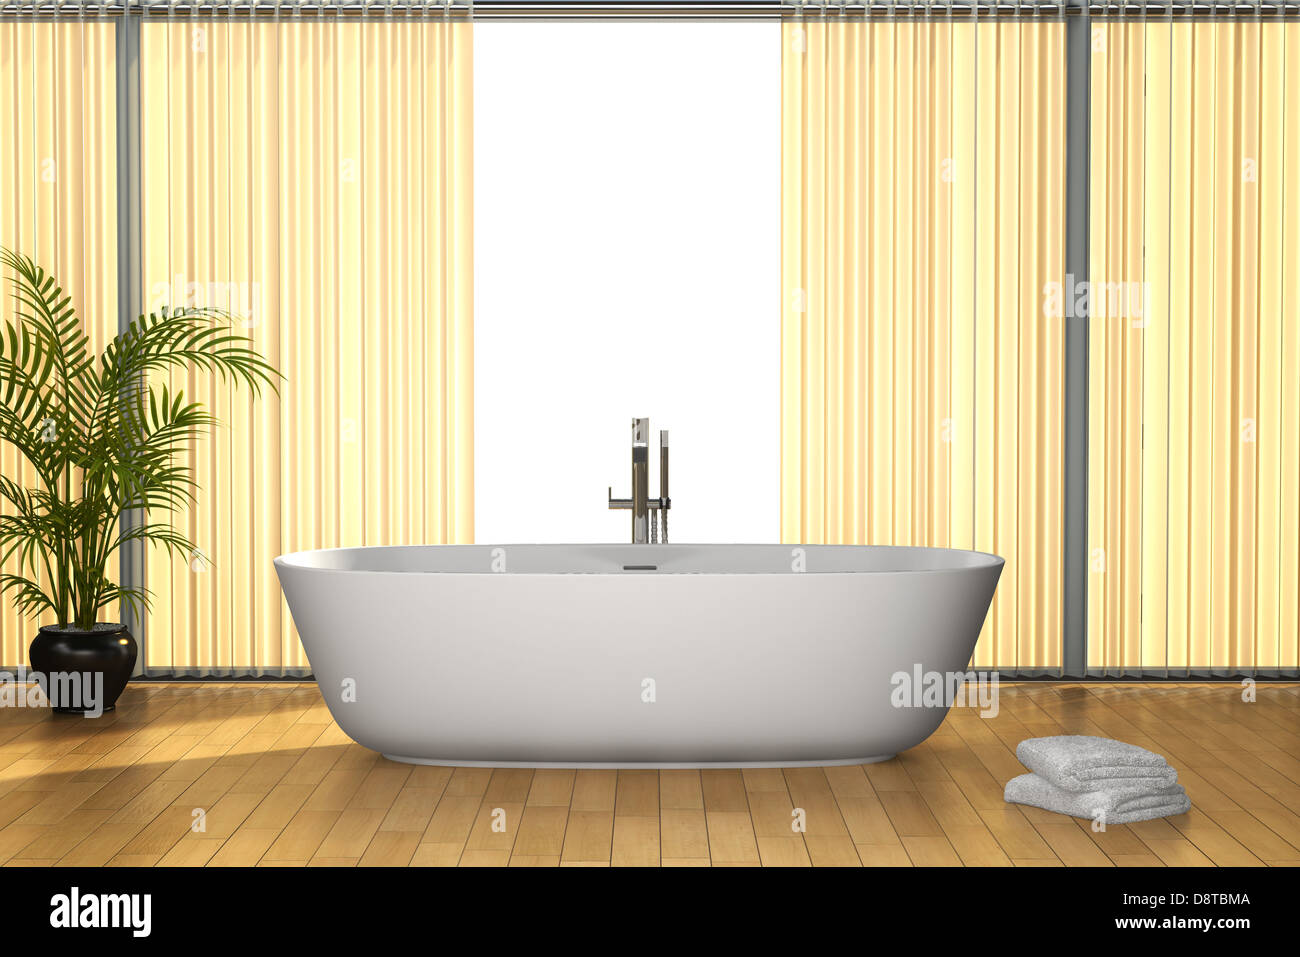 Salle de bains moderne avec plancher brun Banque D'Images